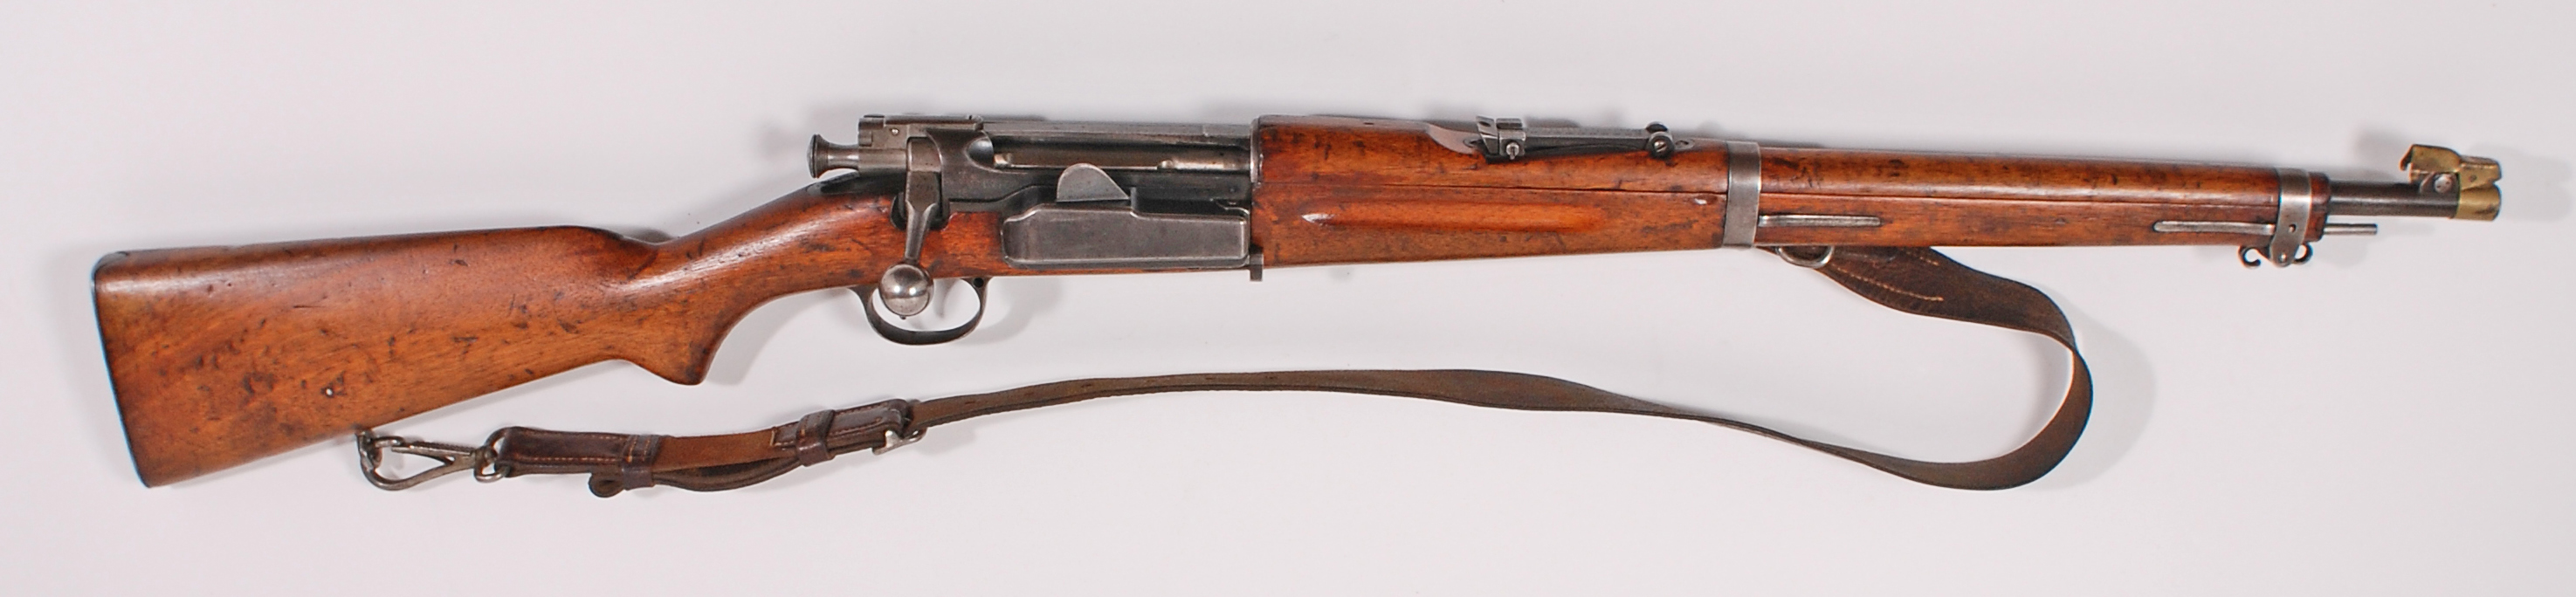 Rifle-Kongsberg-Krag-M1907-11036-1.jpg